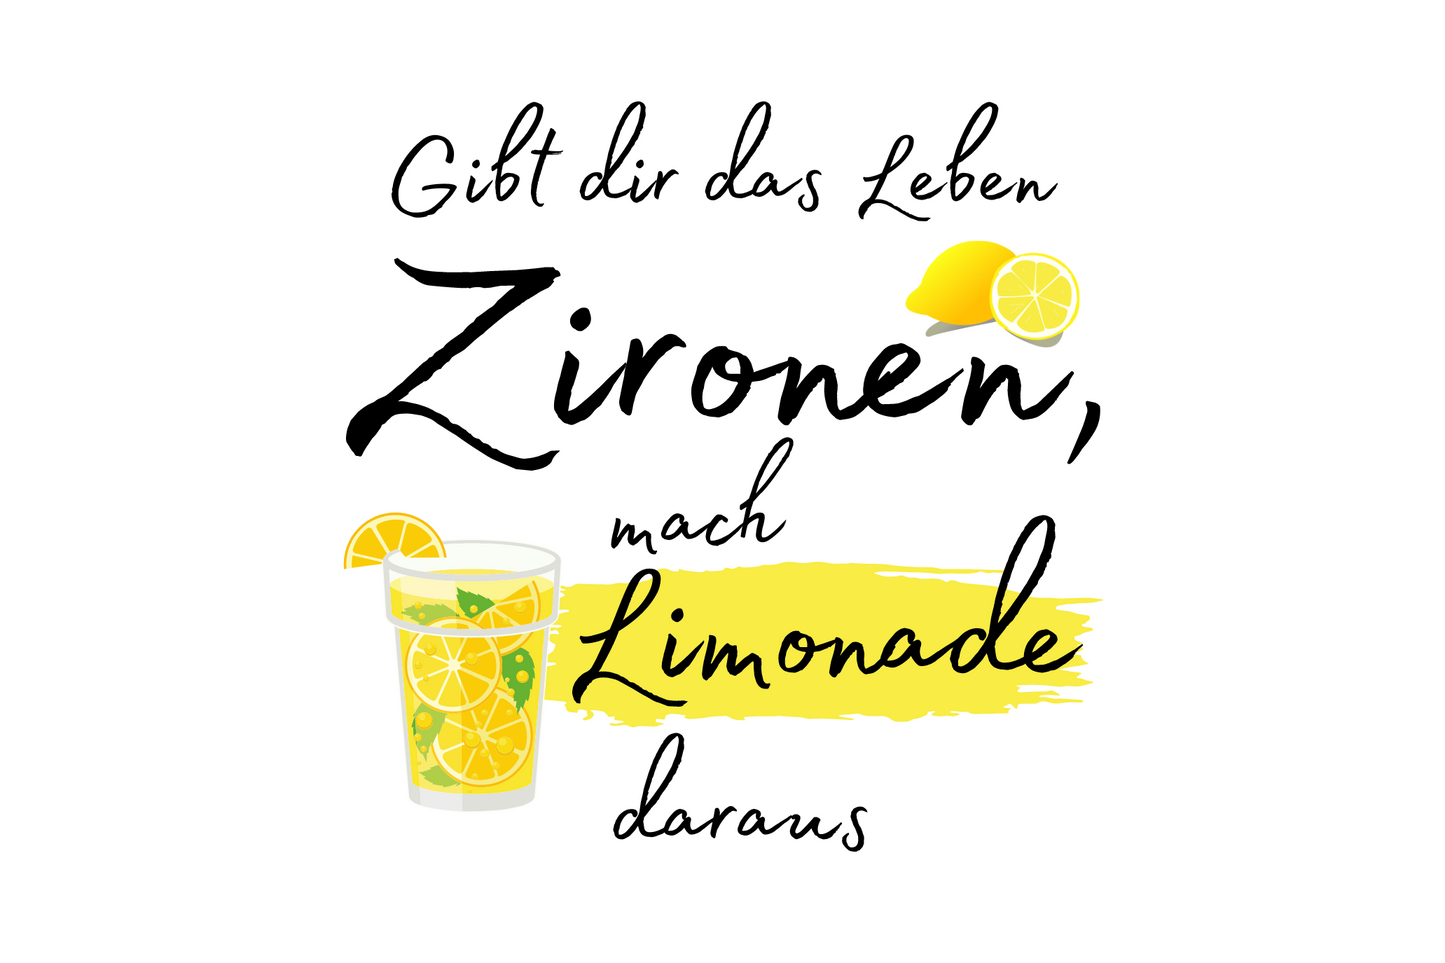 Gibt dir das Leben Zitronen, mach Limonade daraus.